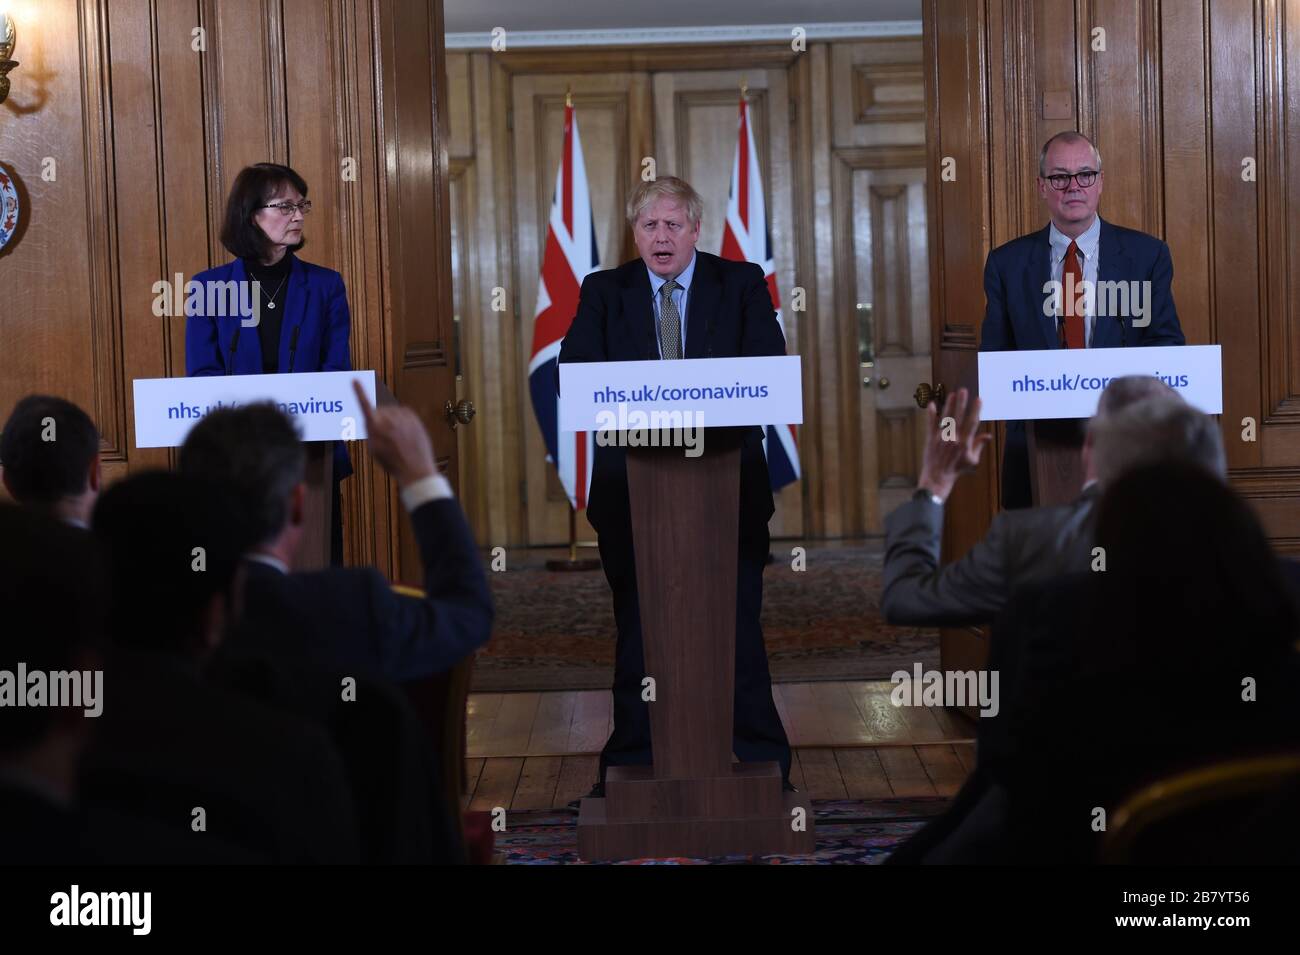 Il primo ministro Boris Johnson ha parlato in occasione di un briefing sui media a Downing Street, Londra, sul coronavirus (COVID-19), mentre l'Inghilterra del NHS ha annunciato che il numero dei decessi per coronavirus aveva raggiunto 104 nel Regno Unito. Foto Stock